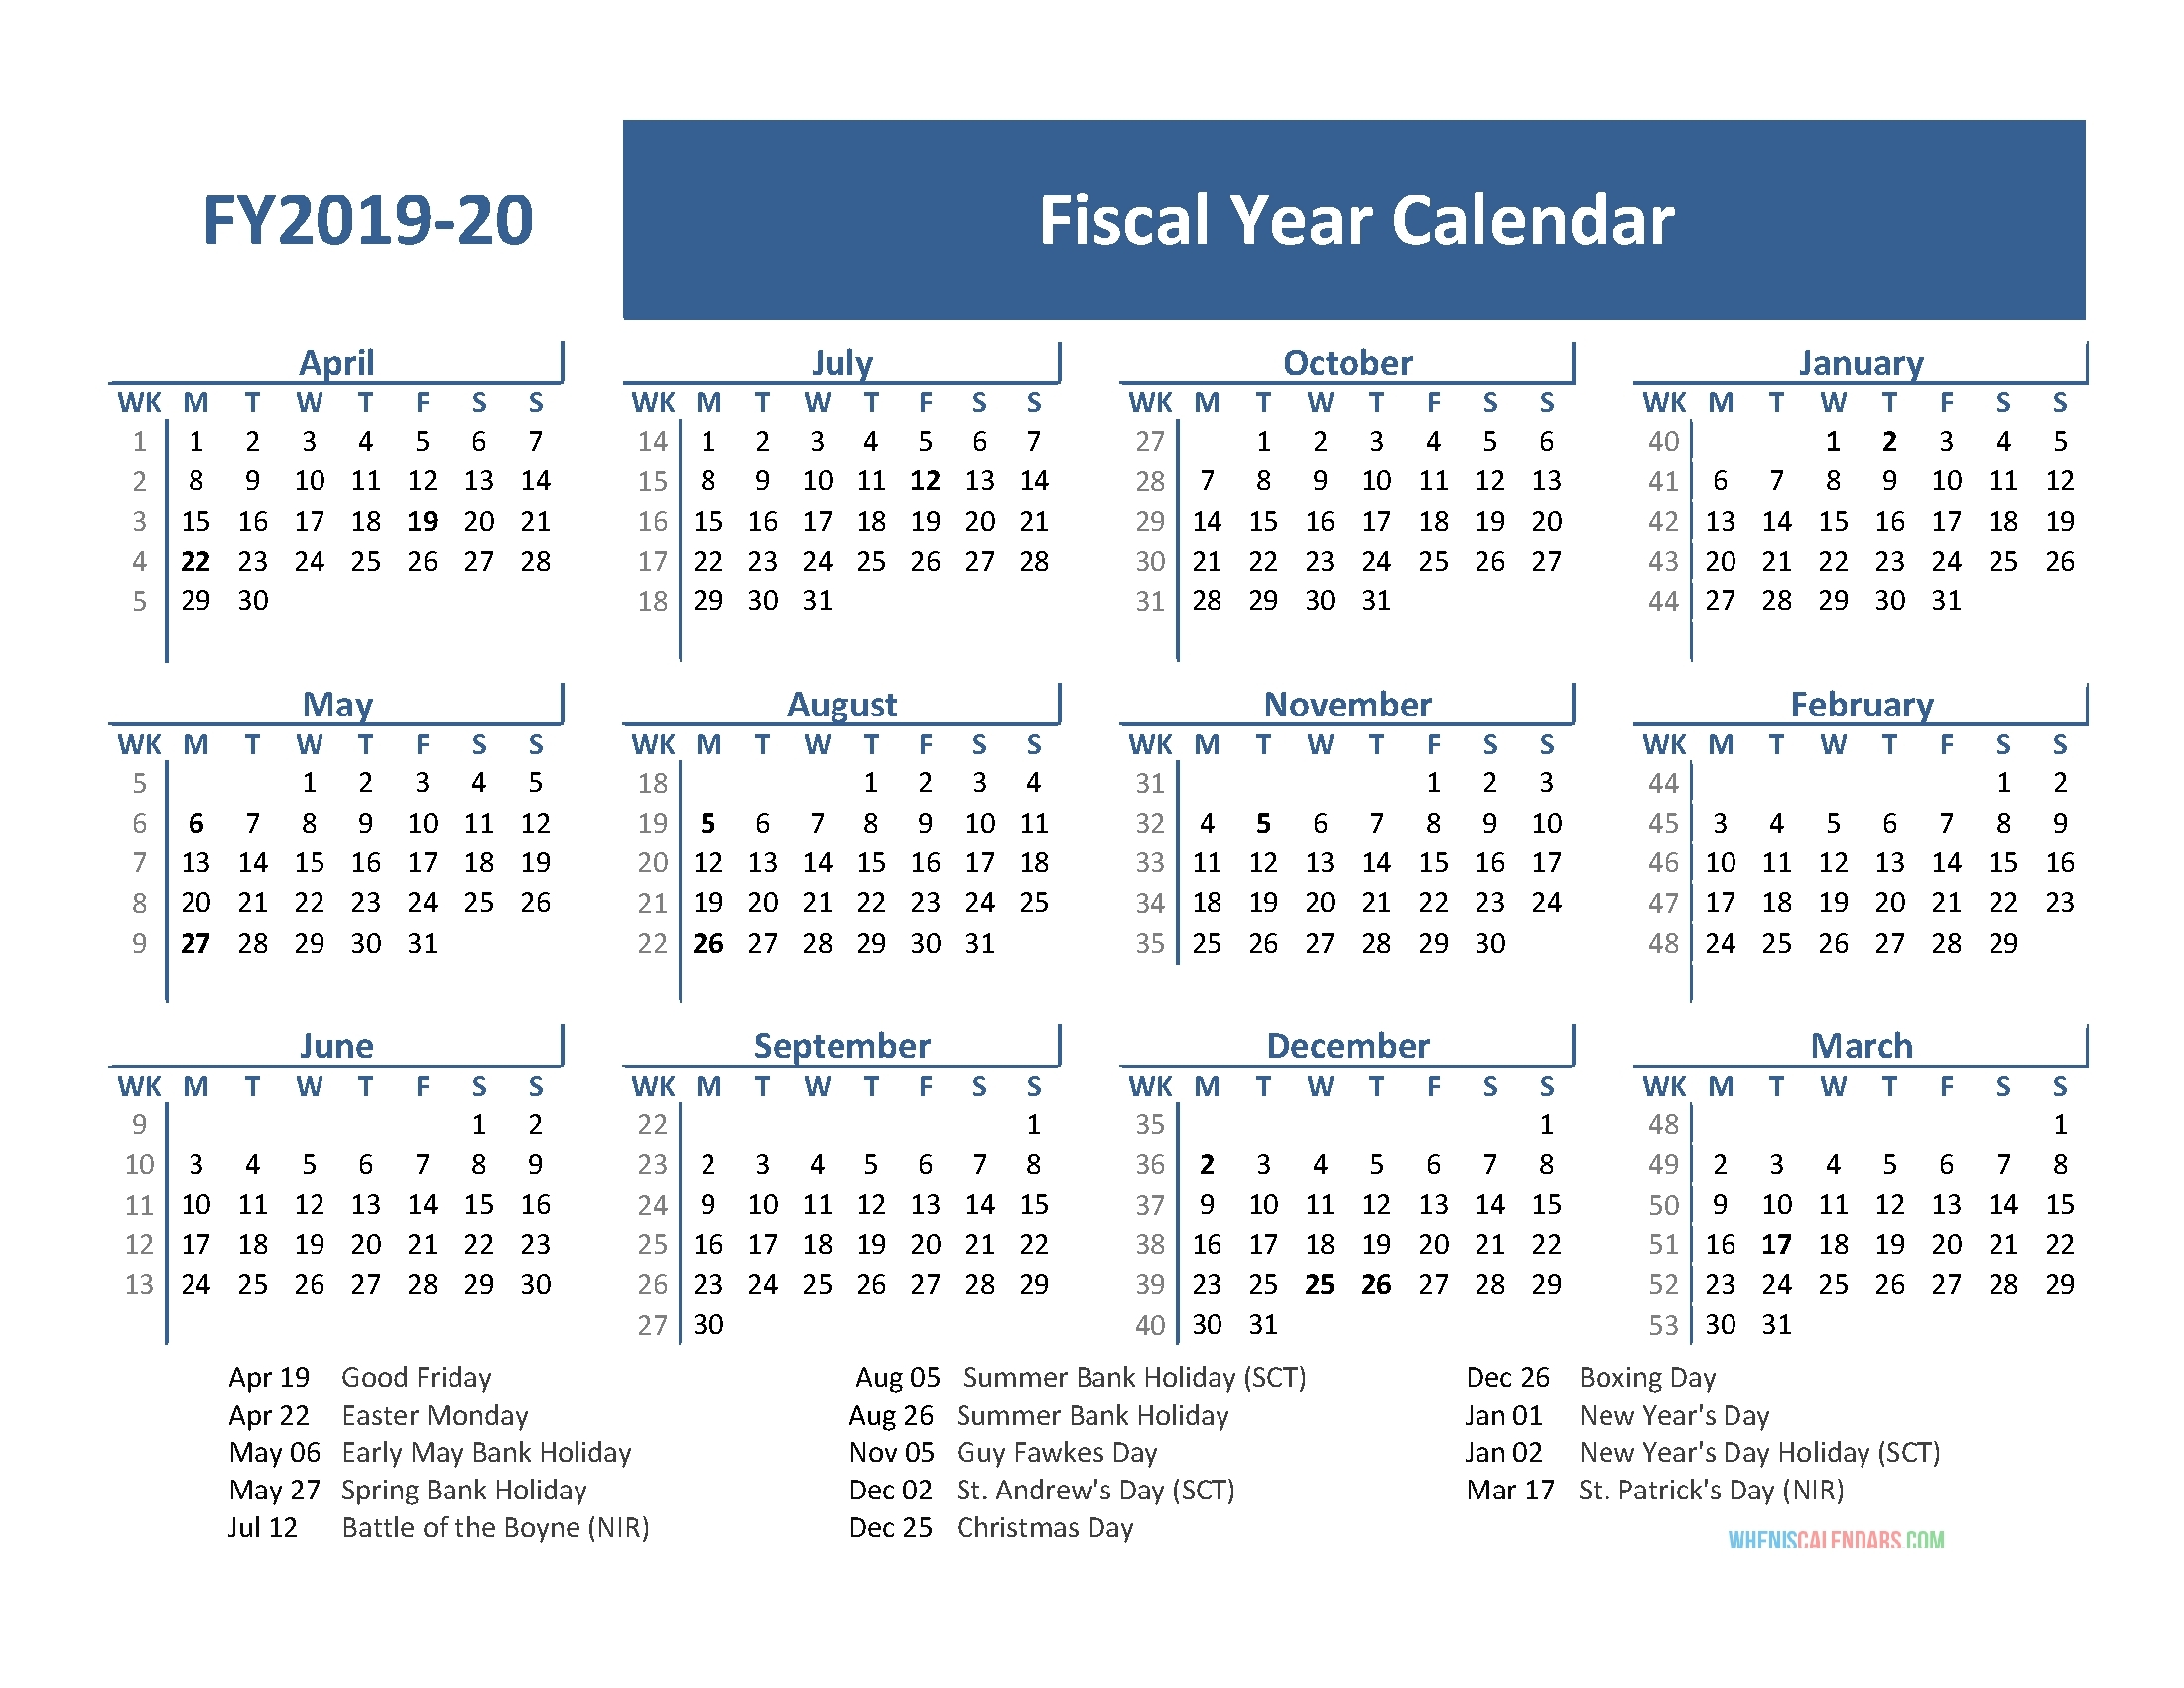 2019-2020 Calendar Financial Week Numbers - Calendar with regard to Financial Calendar 2019 With Week Number